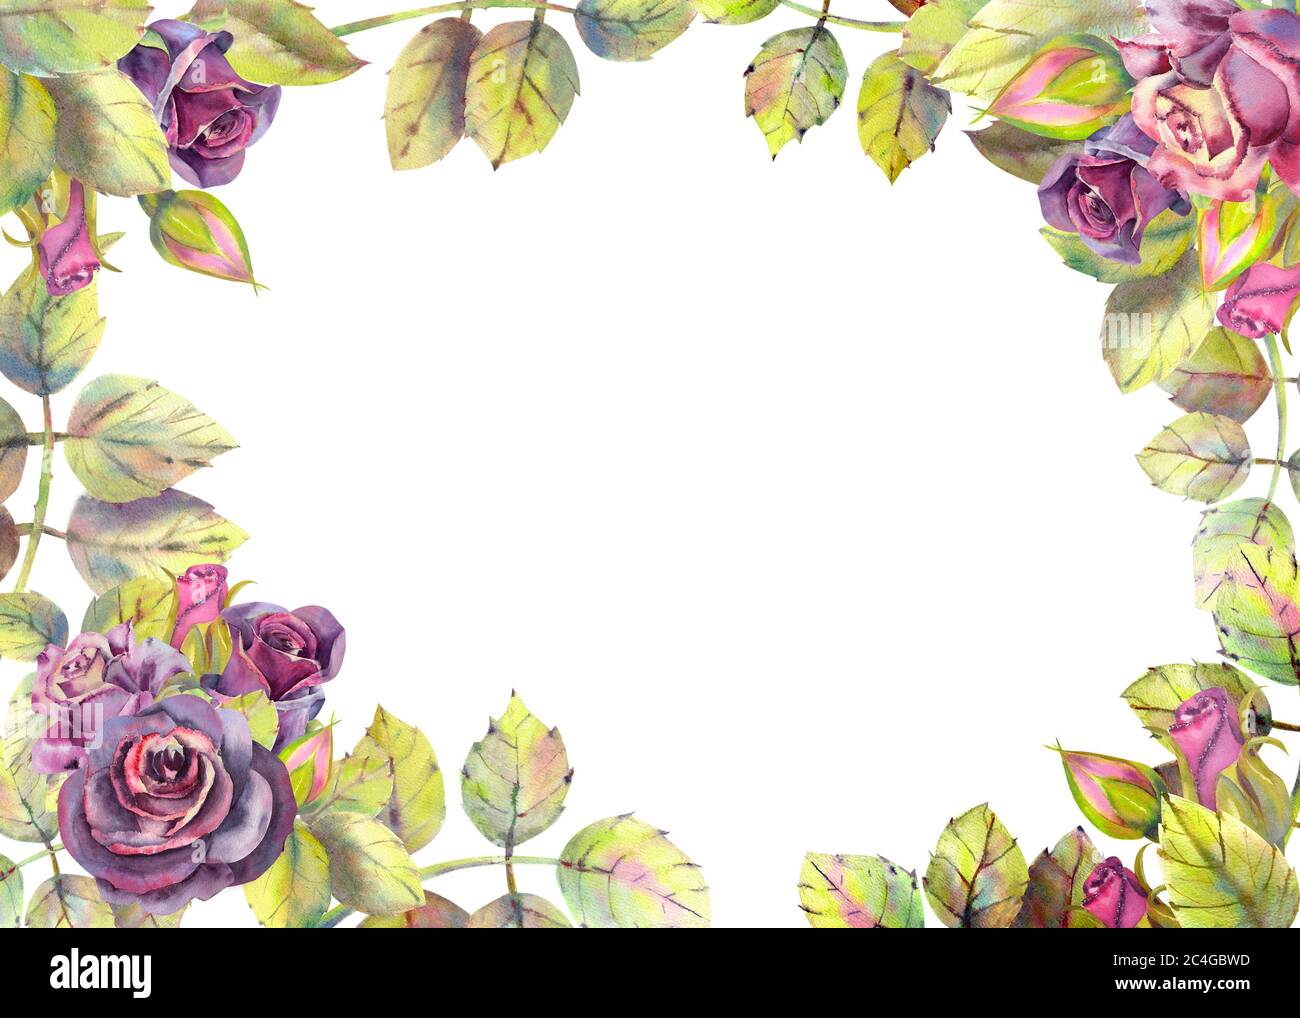 Blüten von dunklen Rosen, grüne Blätter, Zusammensetzung. Horizontale Rahmenausrichtung . Das Konzept der Hochzeitsblumen. Blumenplakat, Einladung Stockfoto